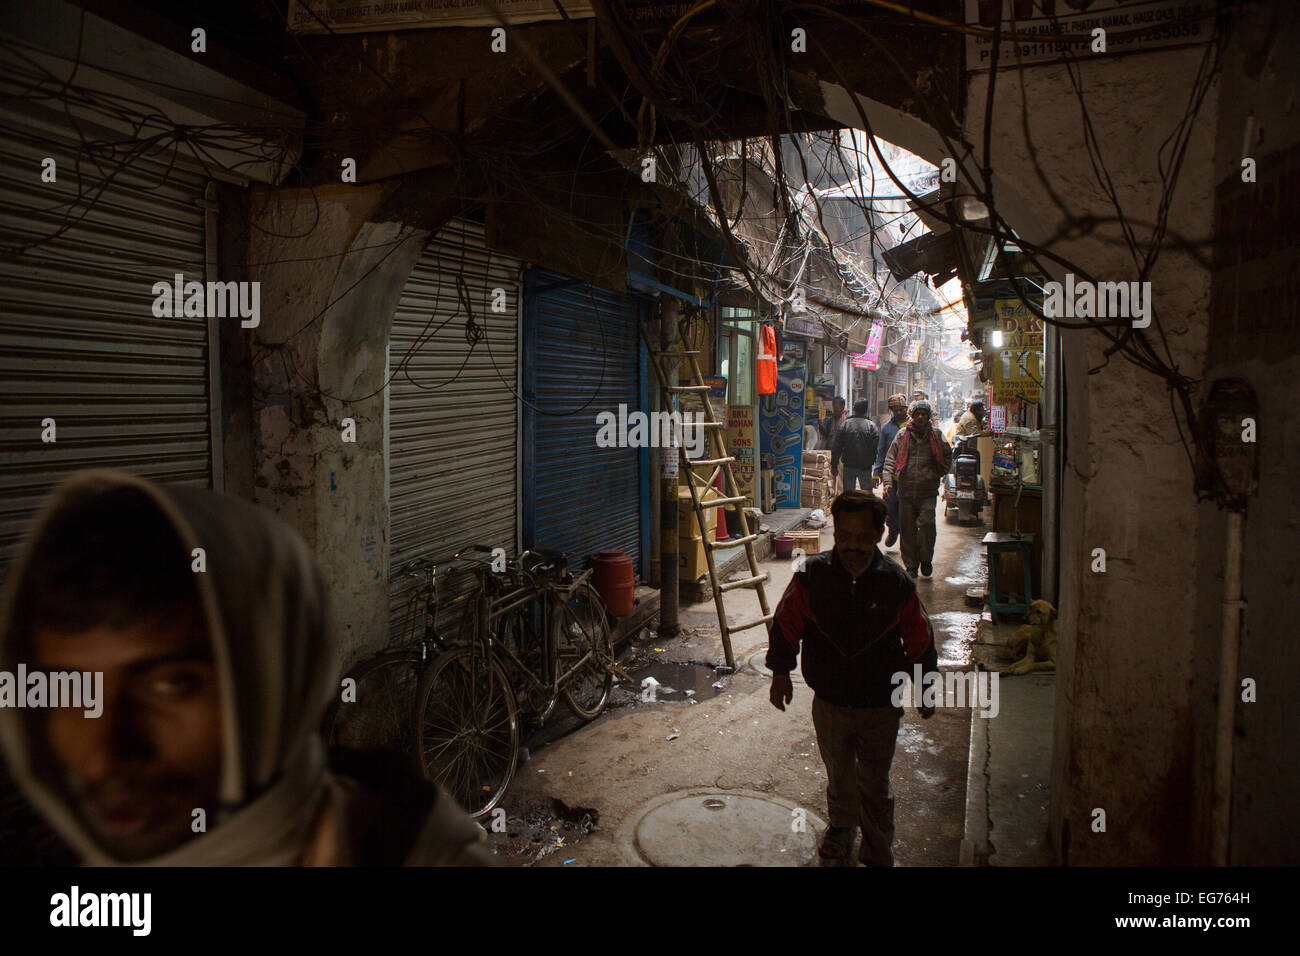 Dark alleyway in Old Delhi, India Stock Photo